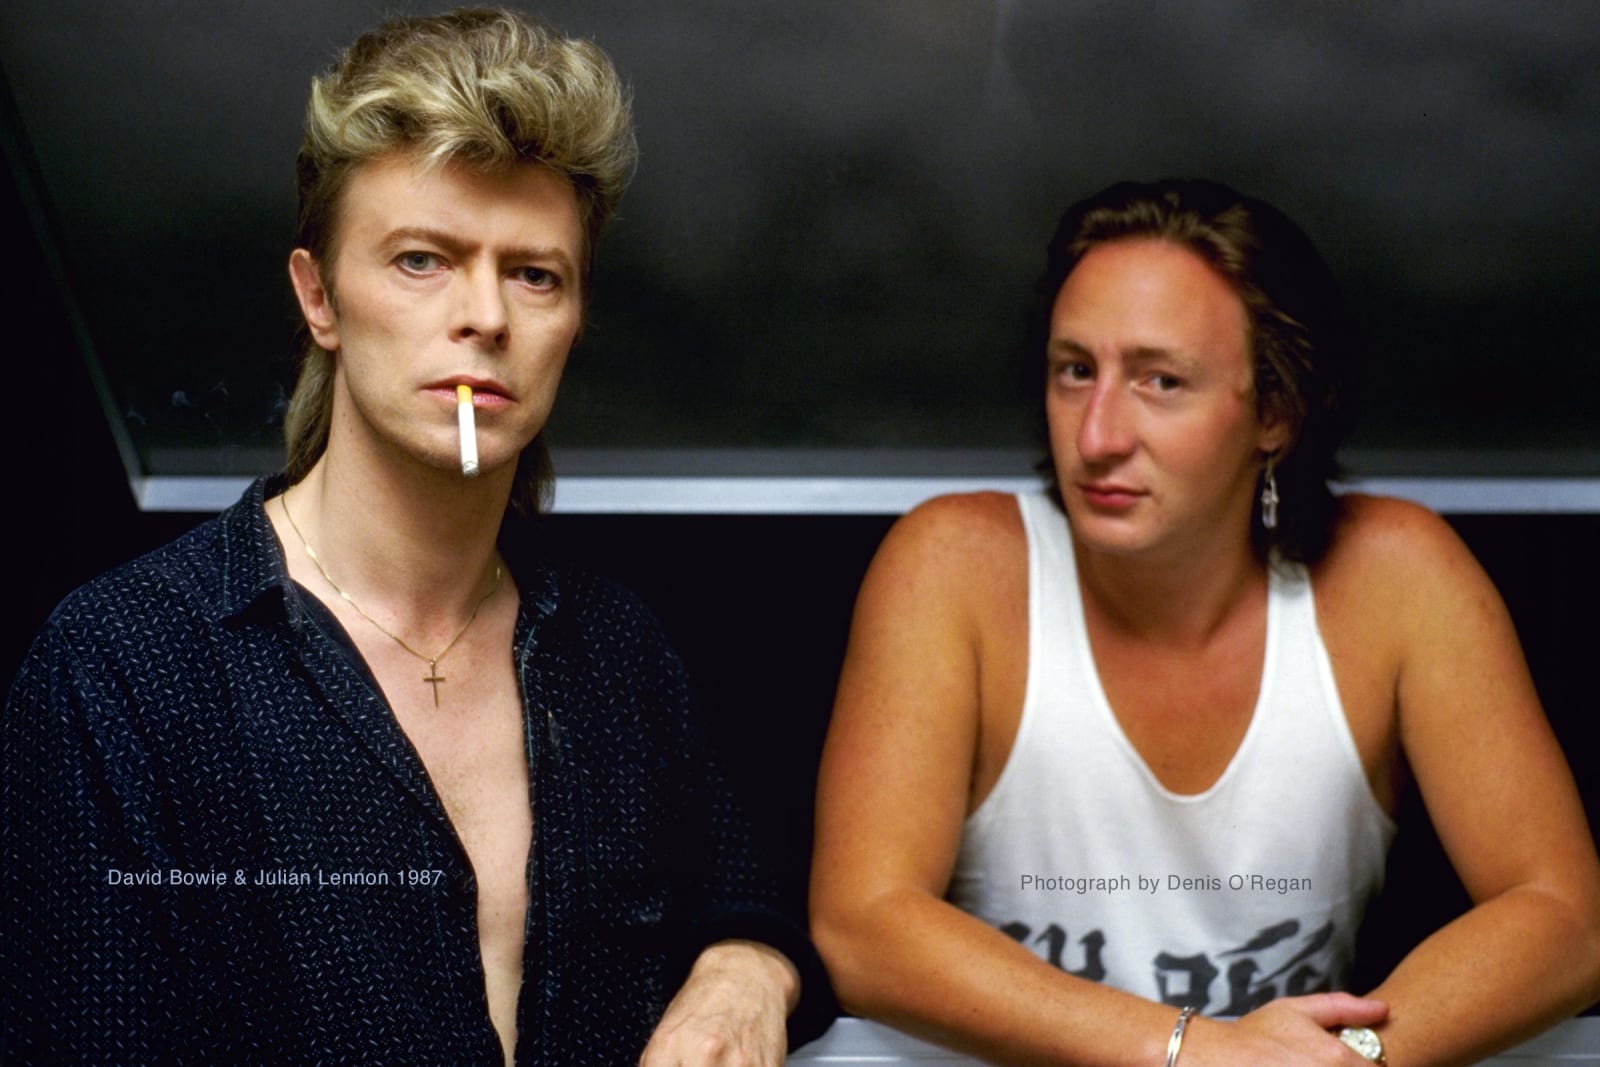 DAVID BOWIE, David Bowie & Julian Lennon, 1987